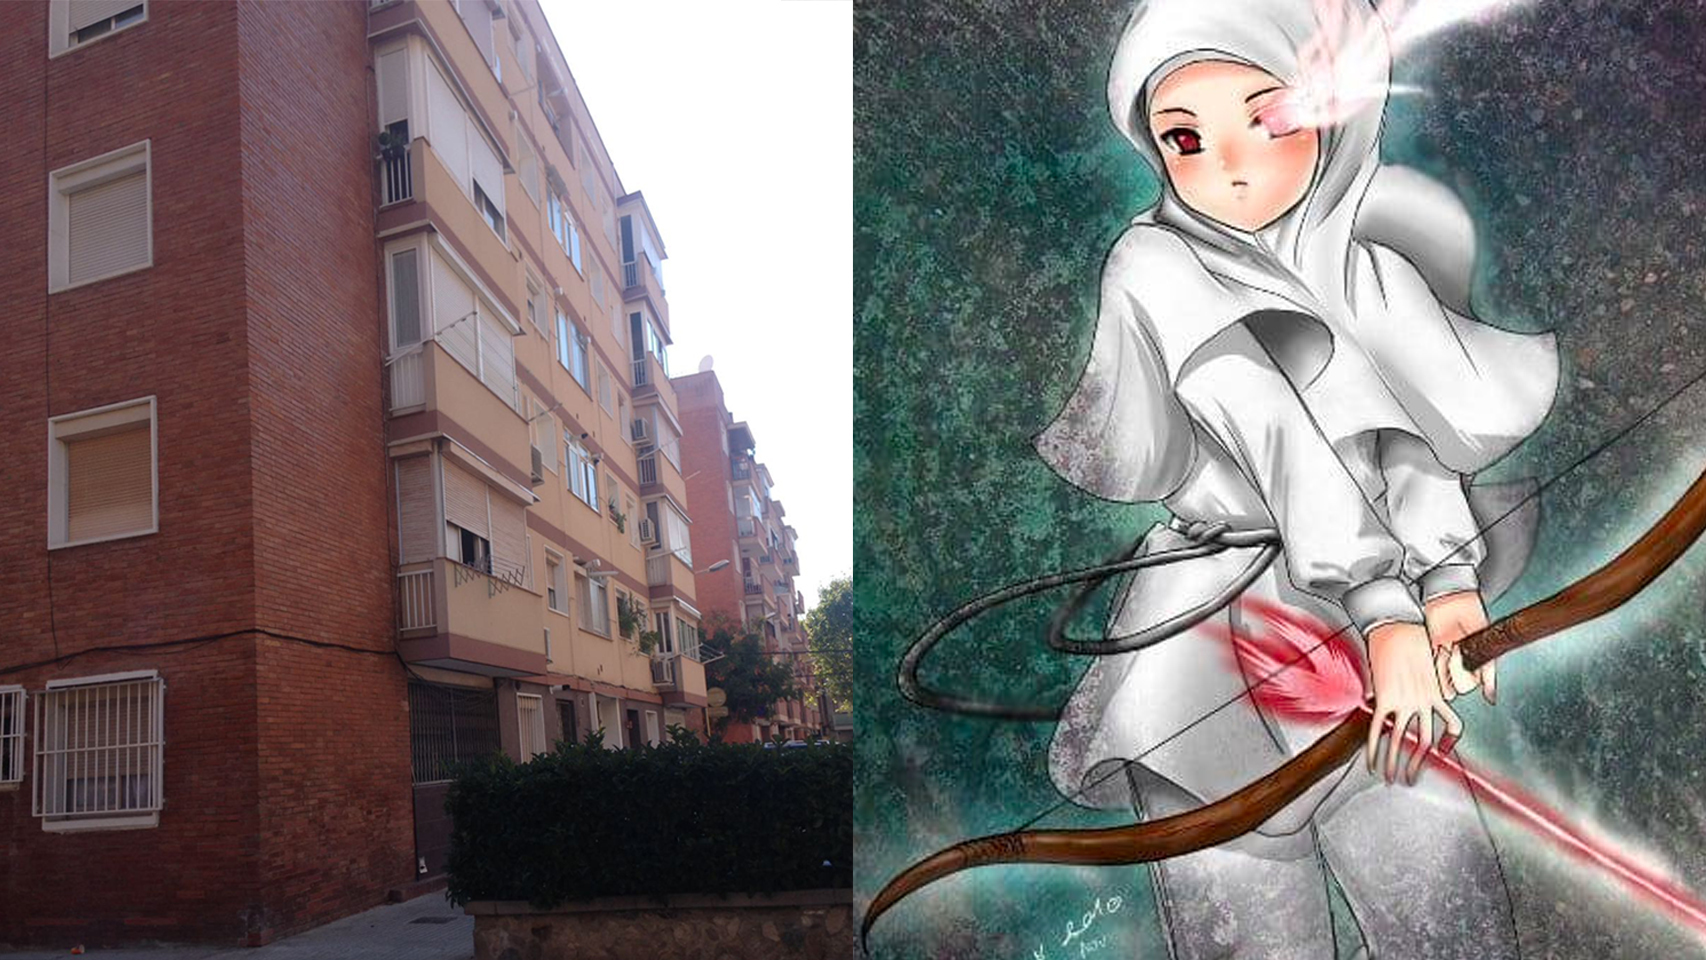 A la izquierda, el edificio en el que vivían Luci y Abdelouahad. A la derecha, uno de los manga muslim que a ella le gustan.